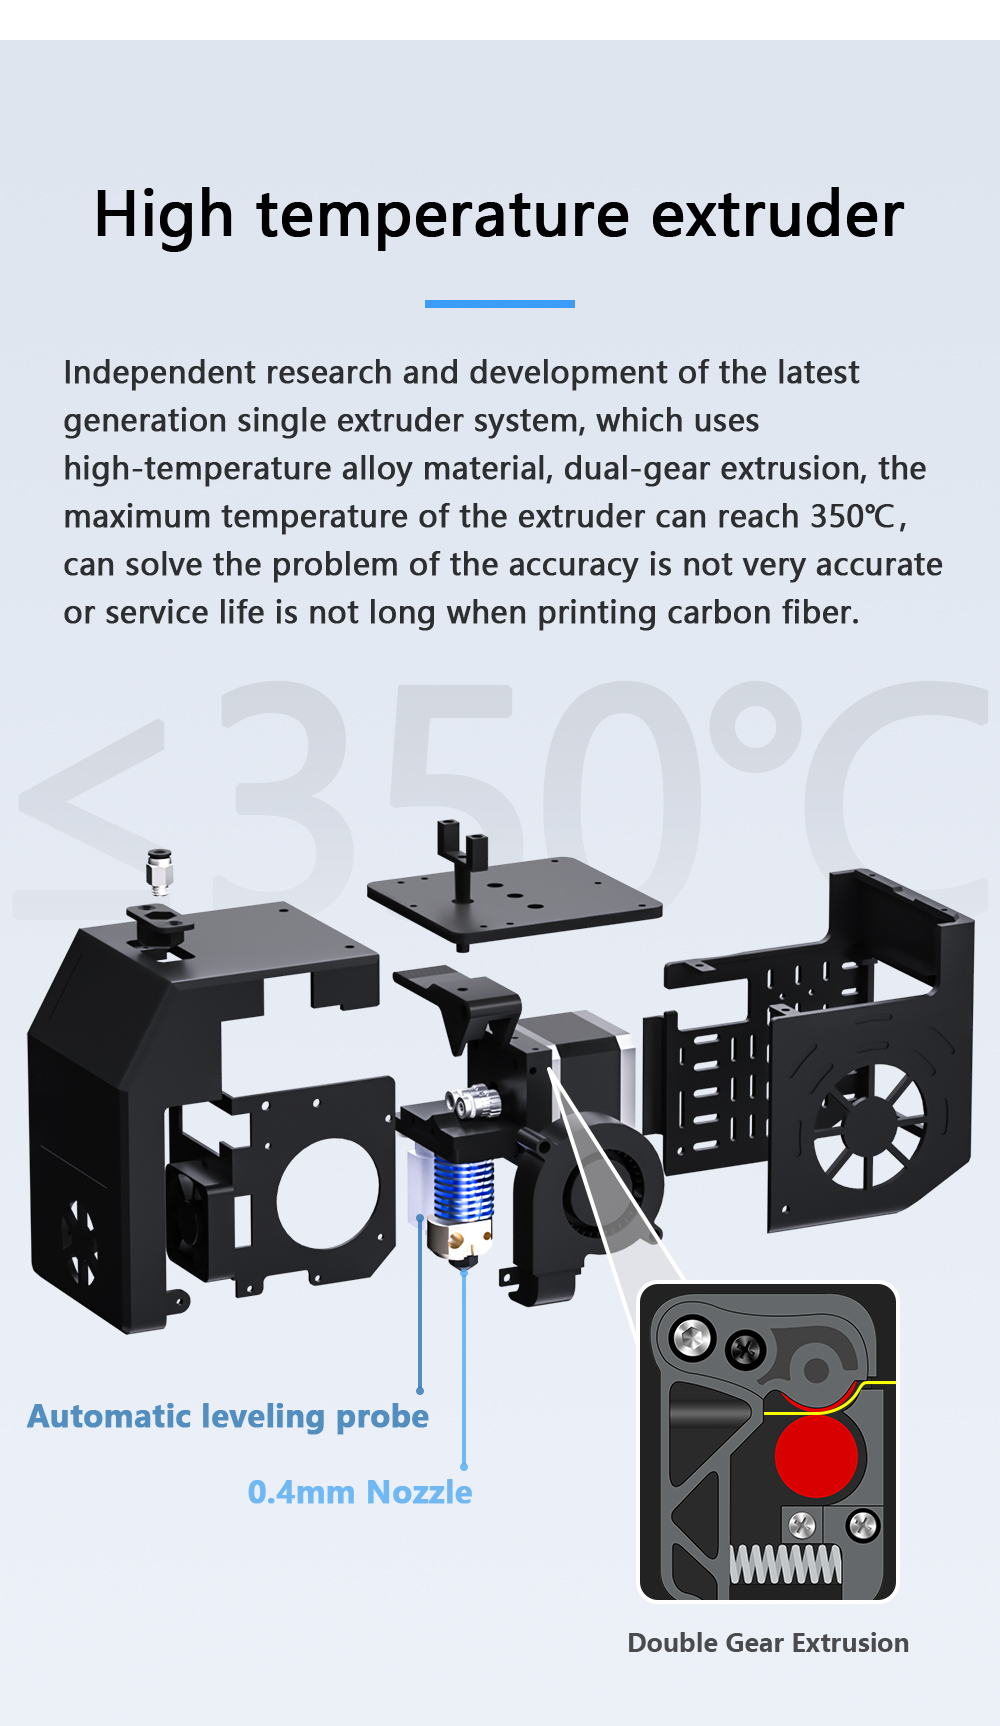 Impressora 3D de nível industrial QIDI TECH X-CF Pro